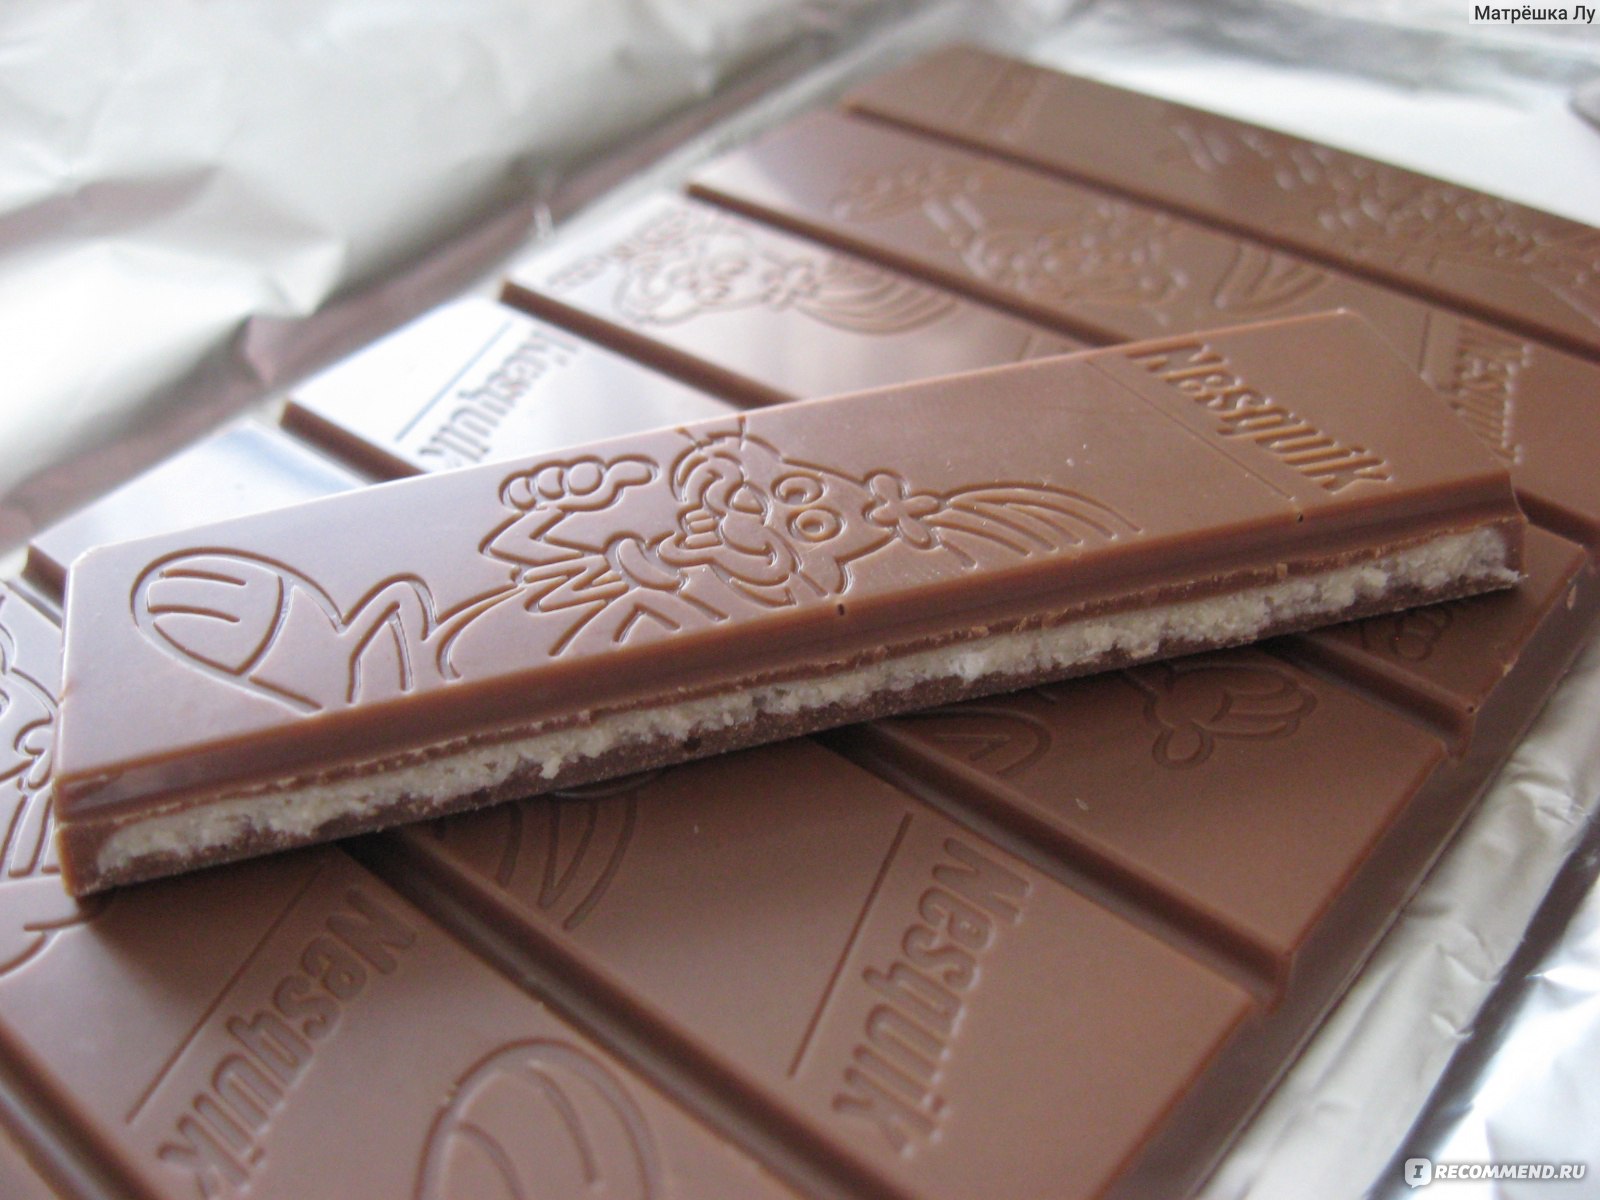 Шоколадка имеет длину 25. Поддельный шоколад. Бутафорский шоколад. Шоколад настоящий и ненастоящий. Палена шоколад.